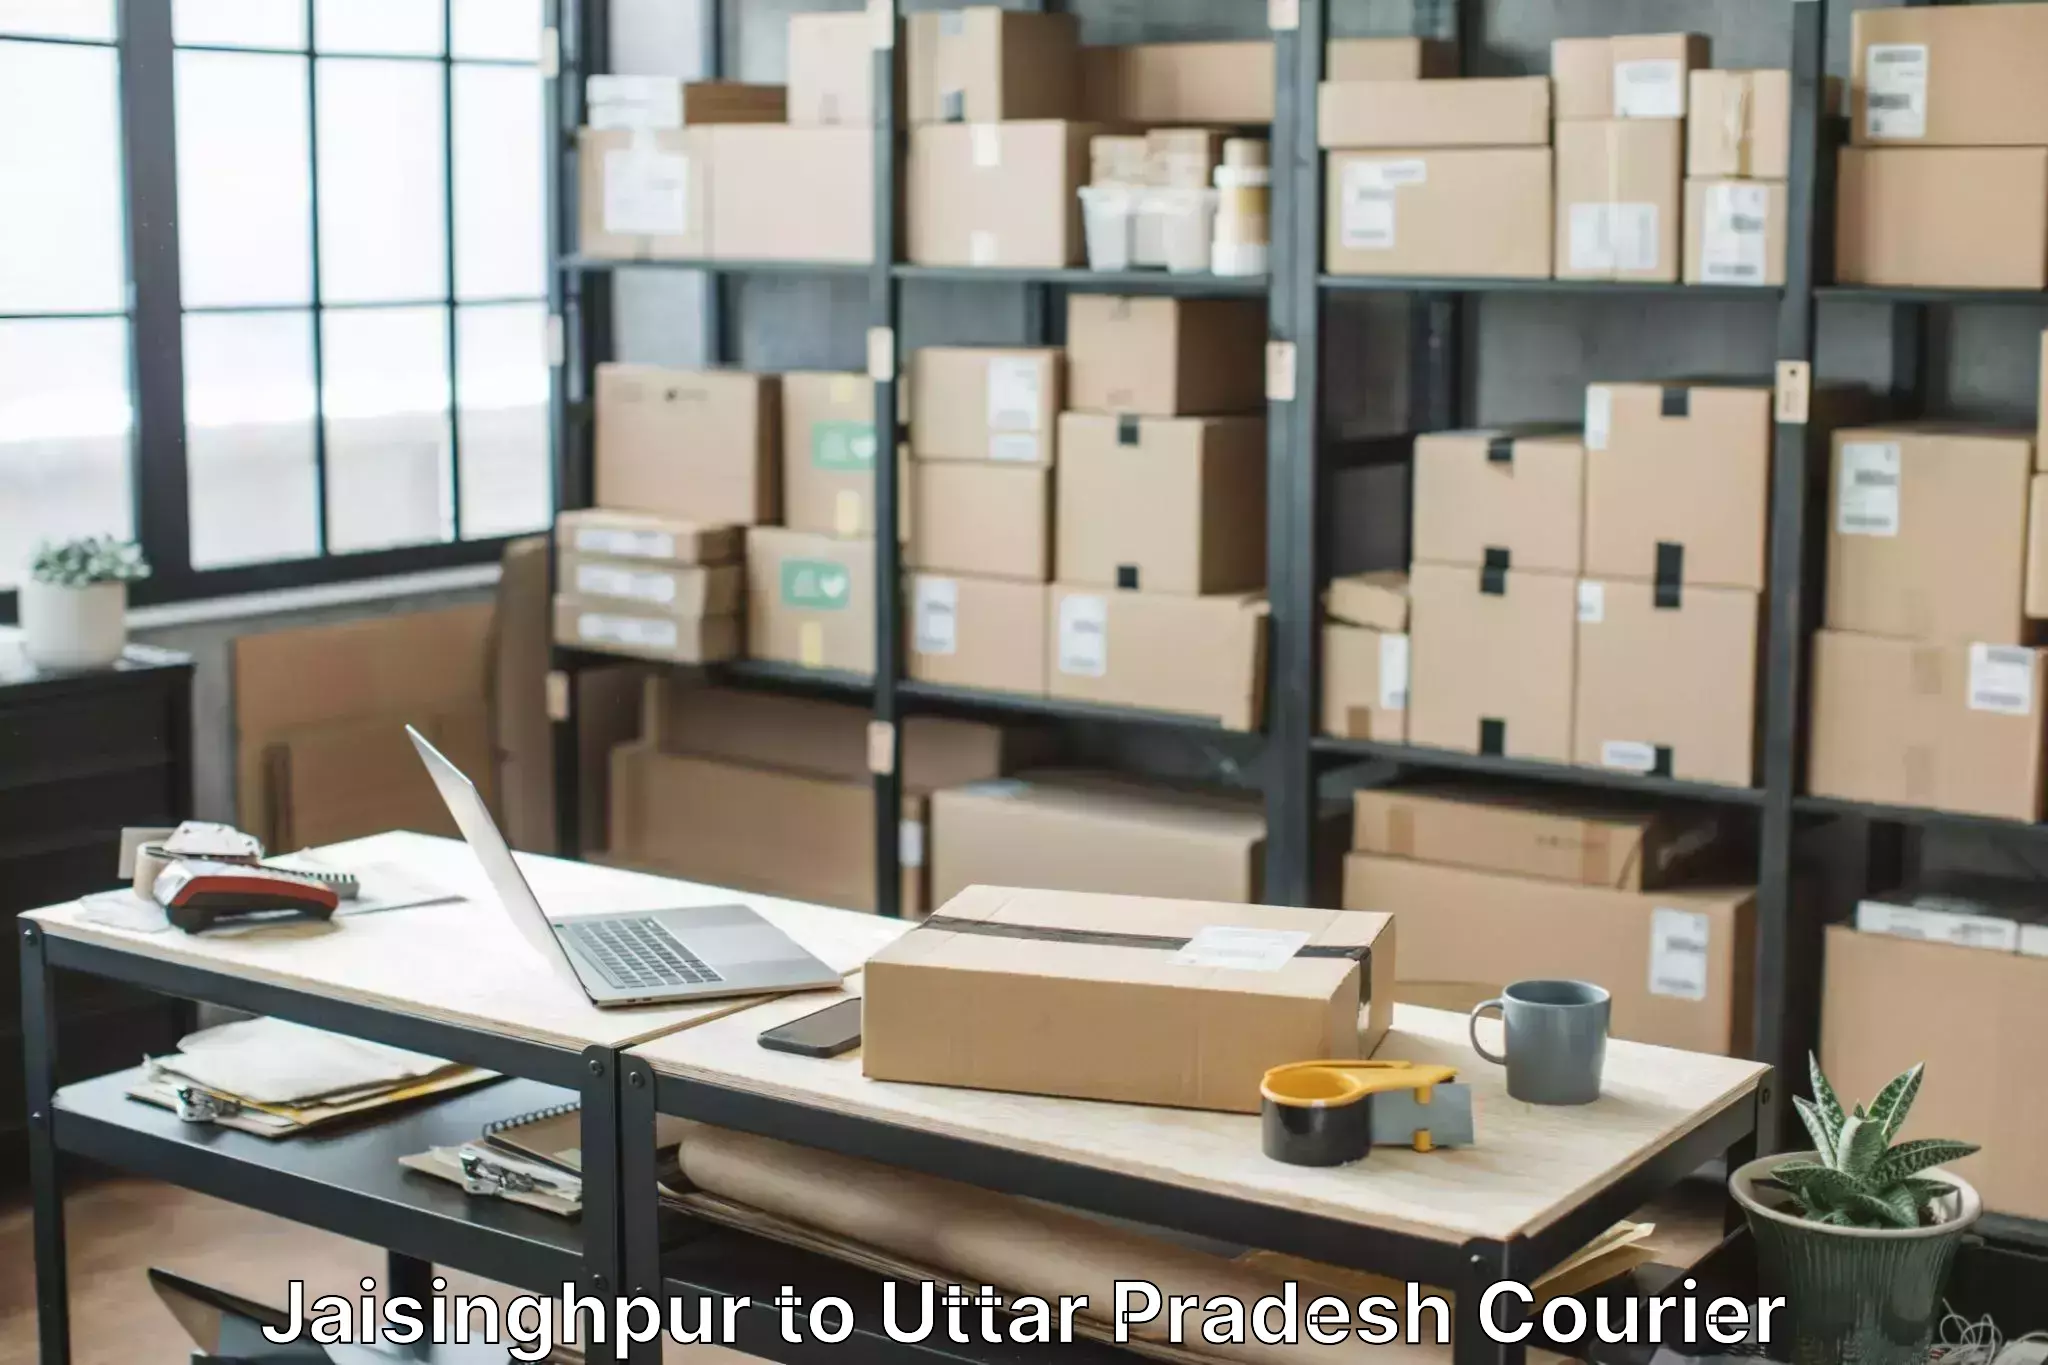 Furniture relocation experts in Jaisinghpur to Fatehpur